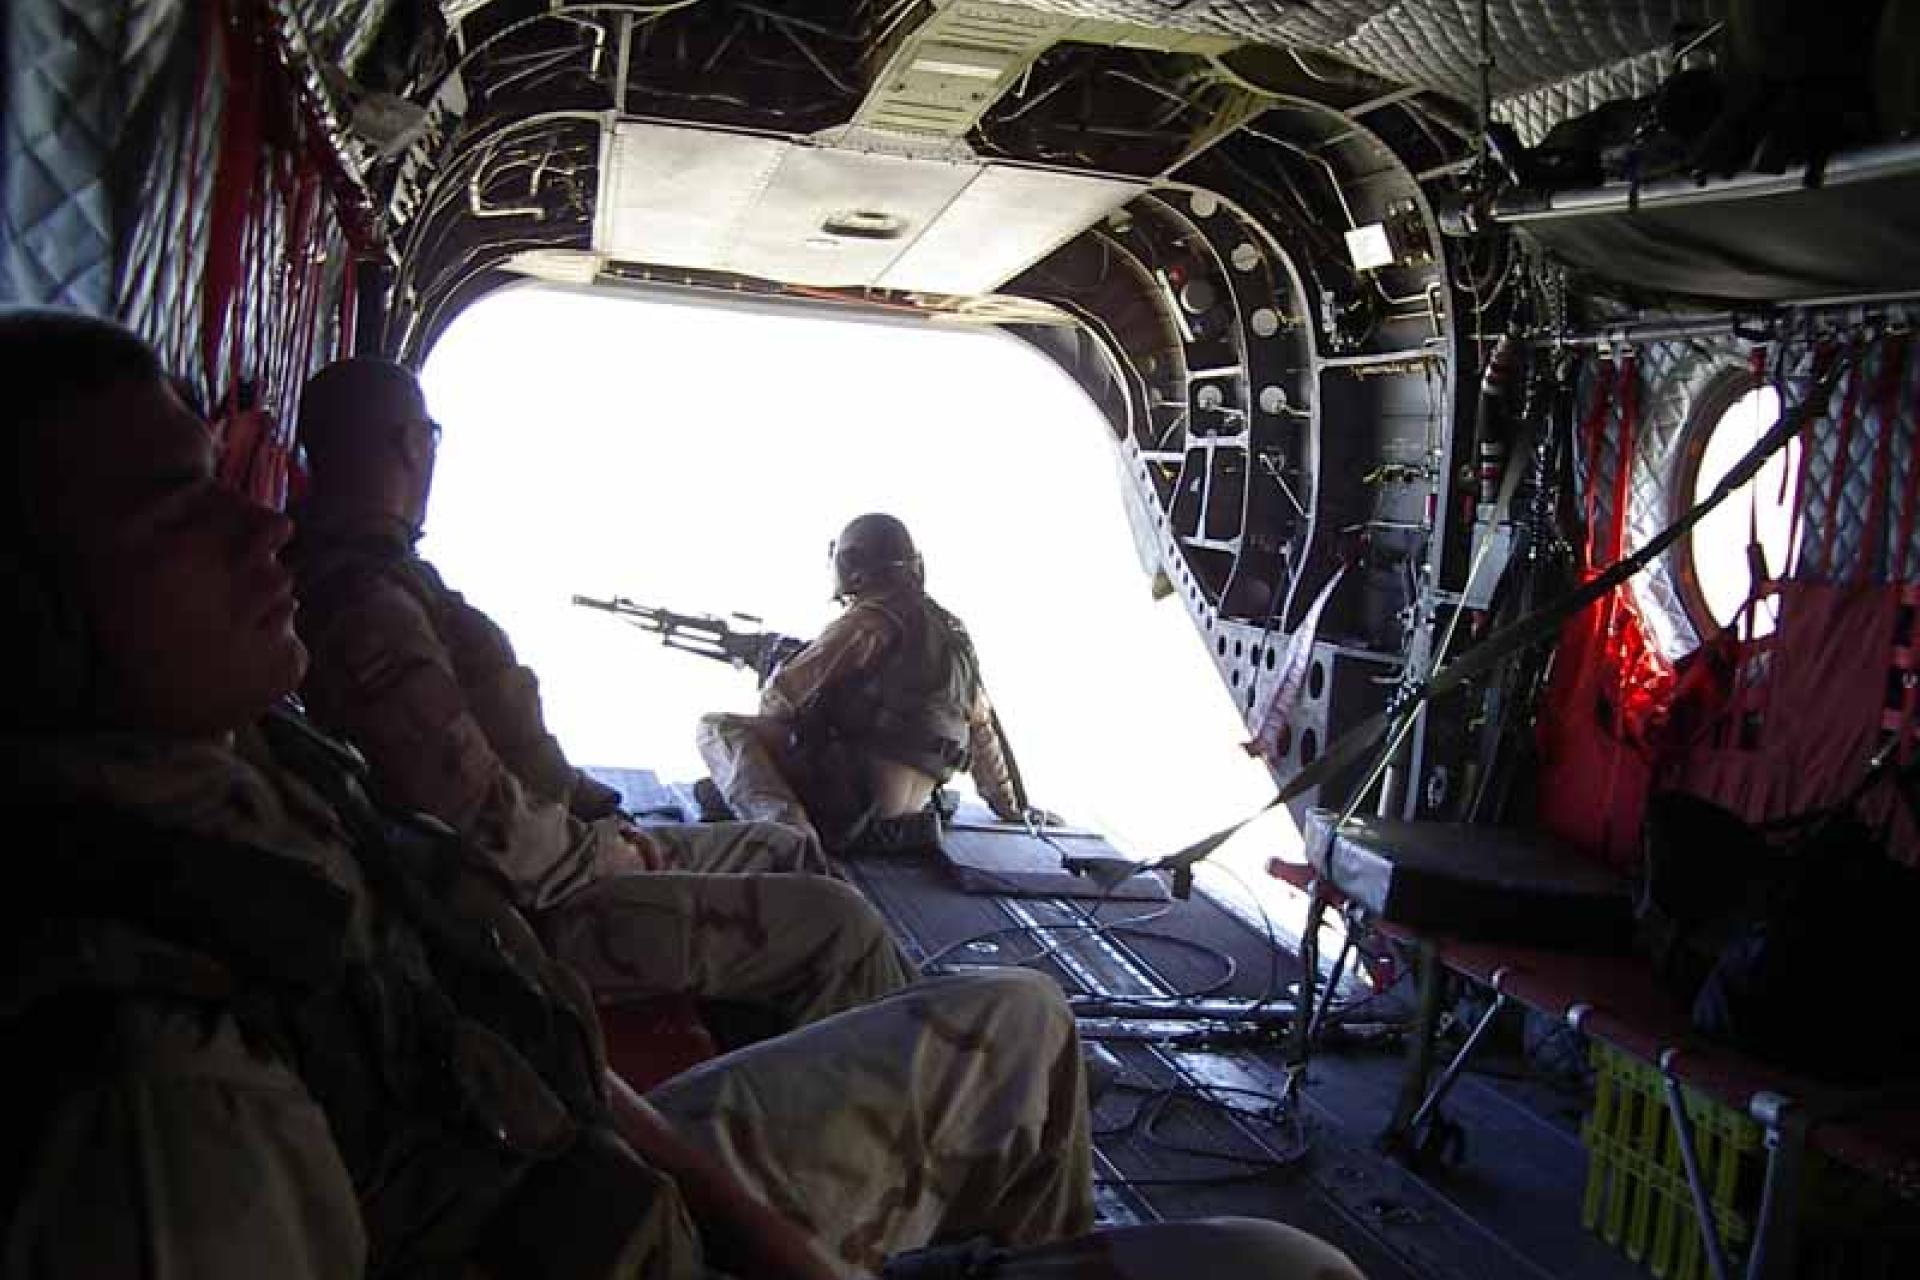 Drie soldaten in een Helicopter met de laadklep open. Soldaat met mitrailleur kijkt via laadklep naar buiten